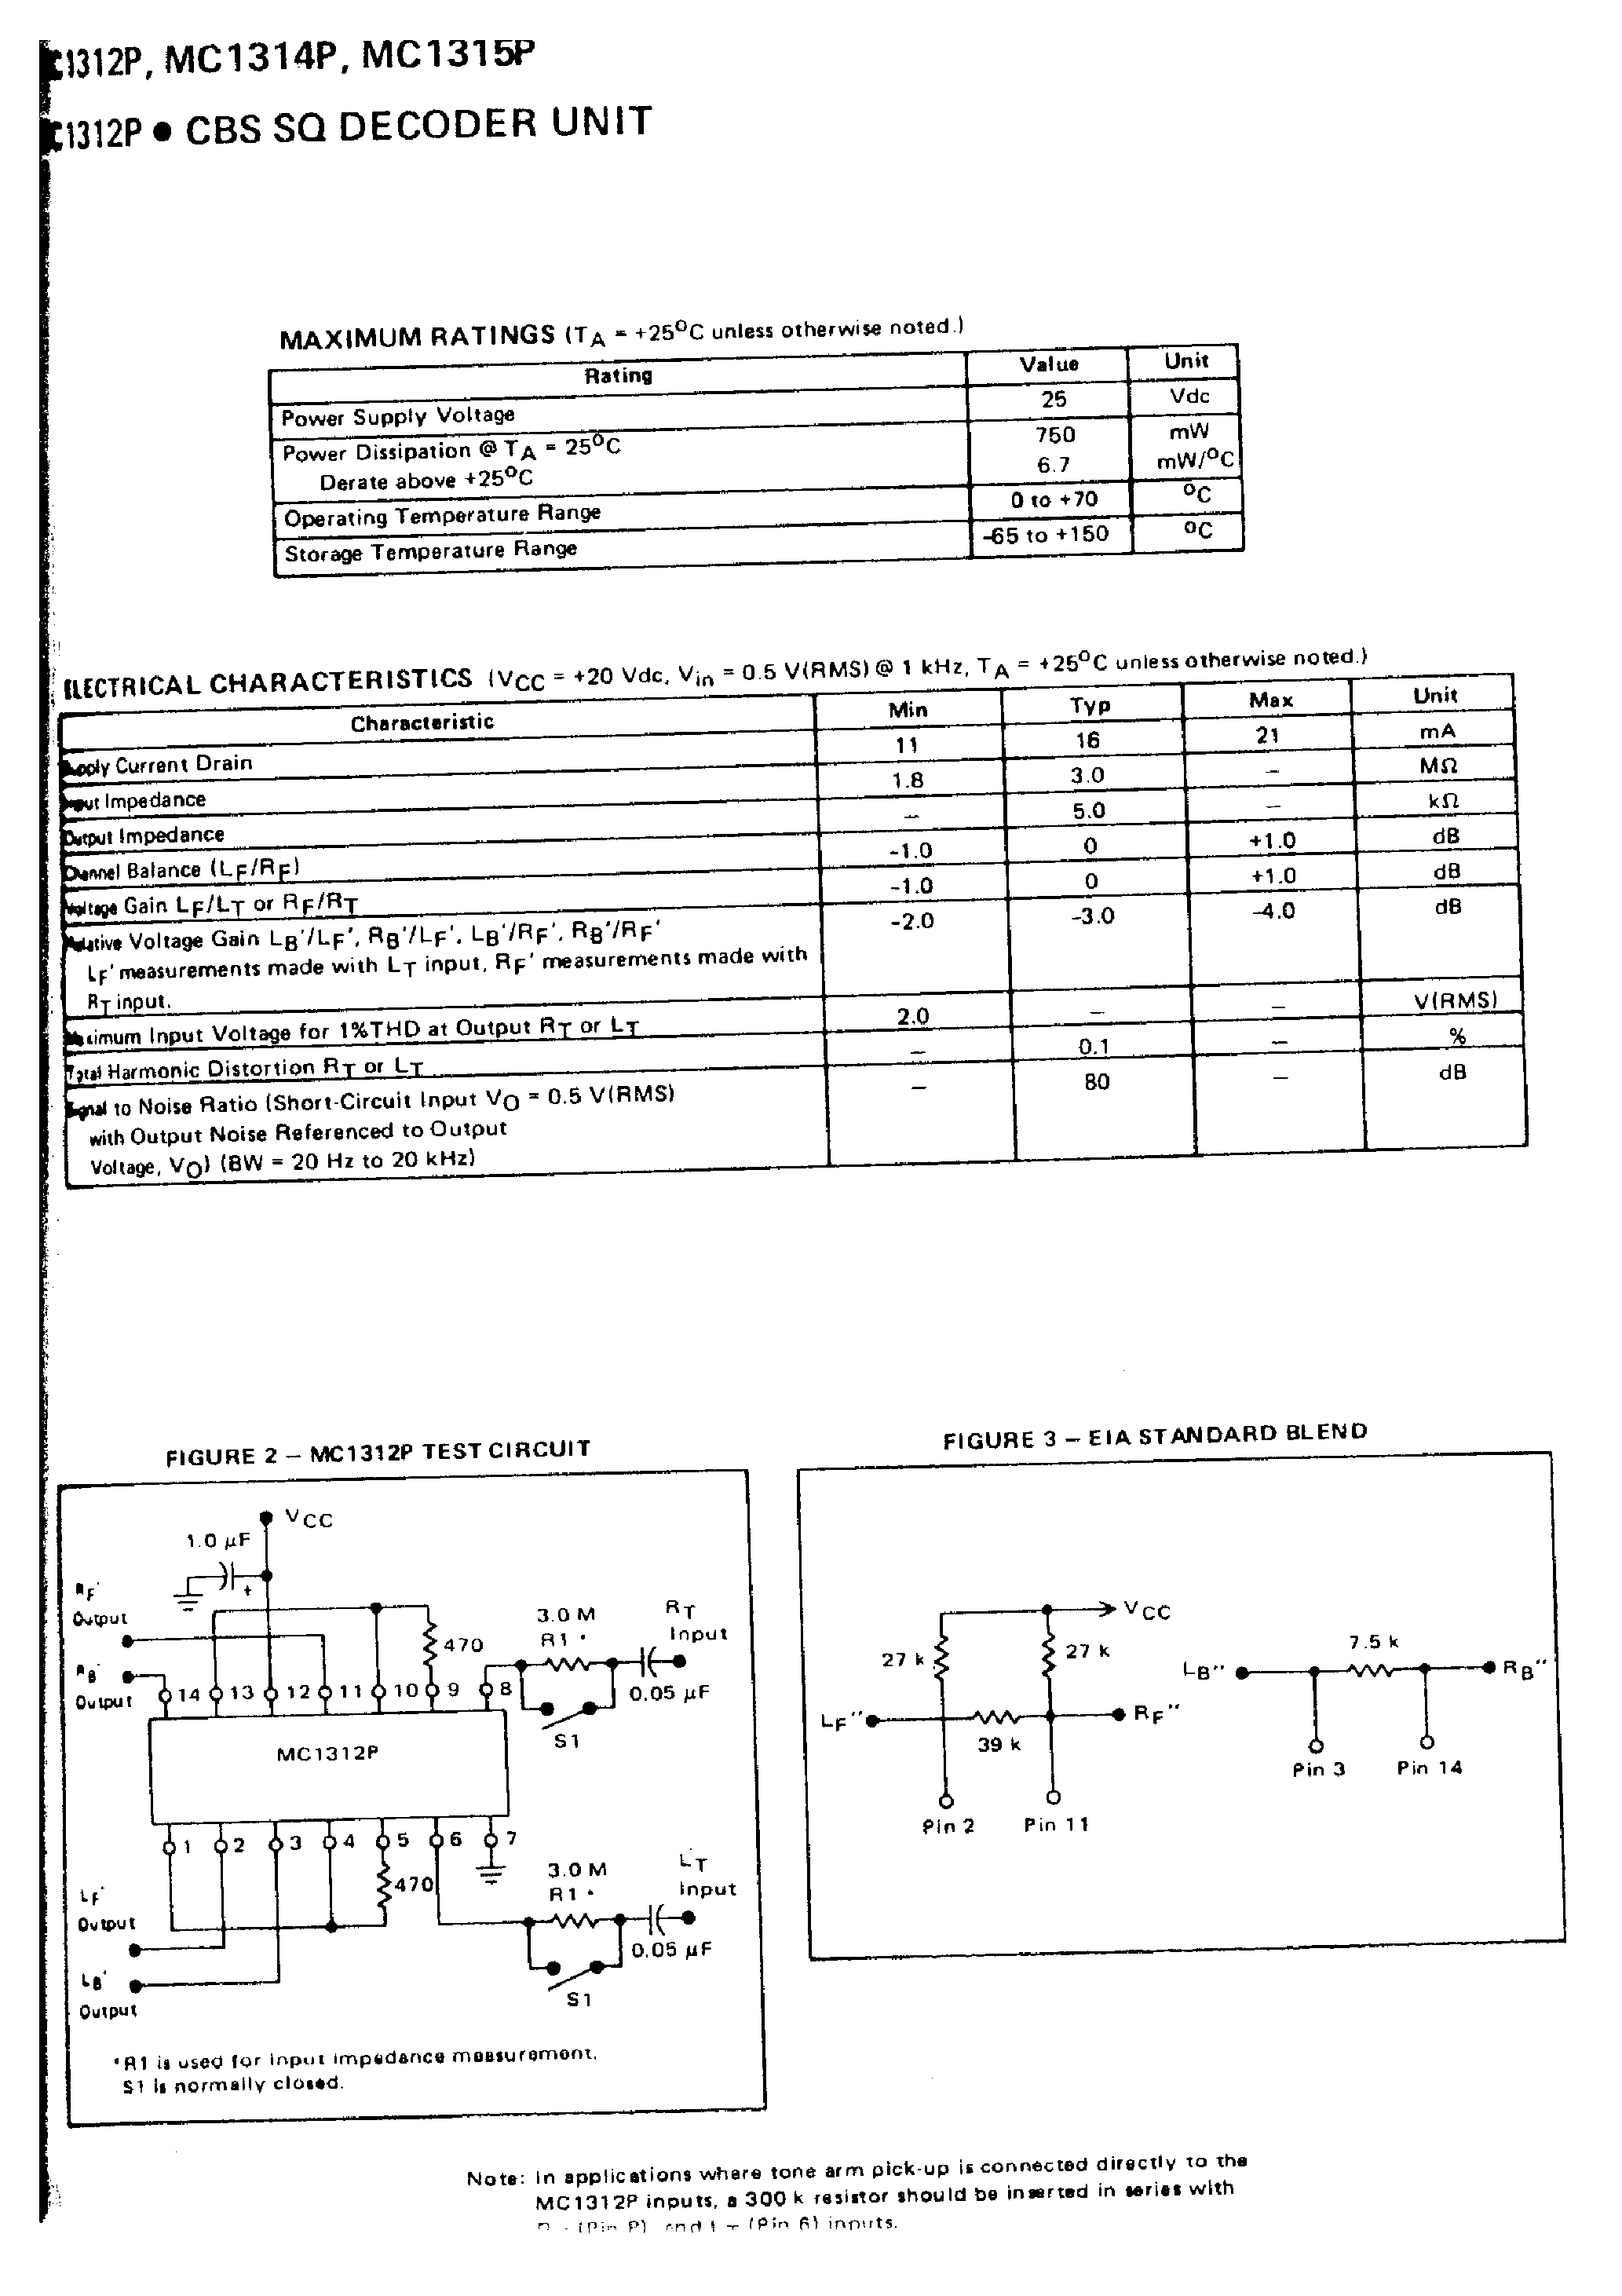 Datasheet MC1312P - (MC1312P = MC1315P) CBS SQ LOGIC DECODER SYSTEM page 2